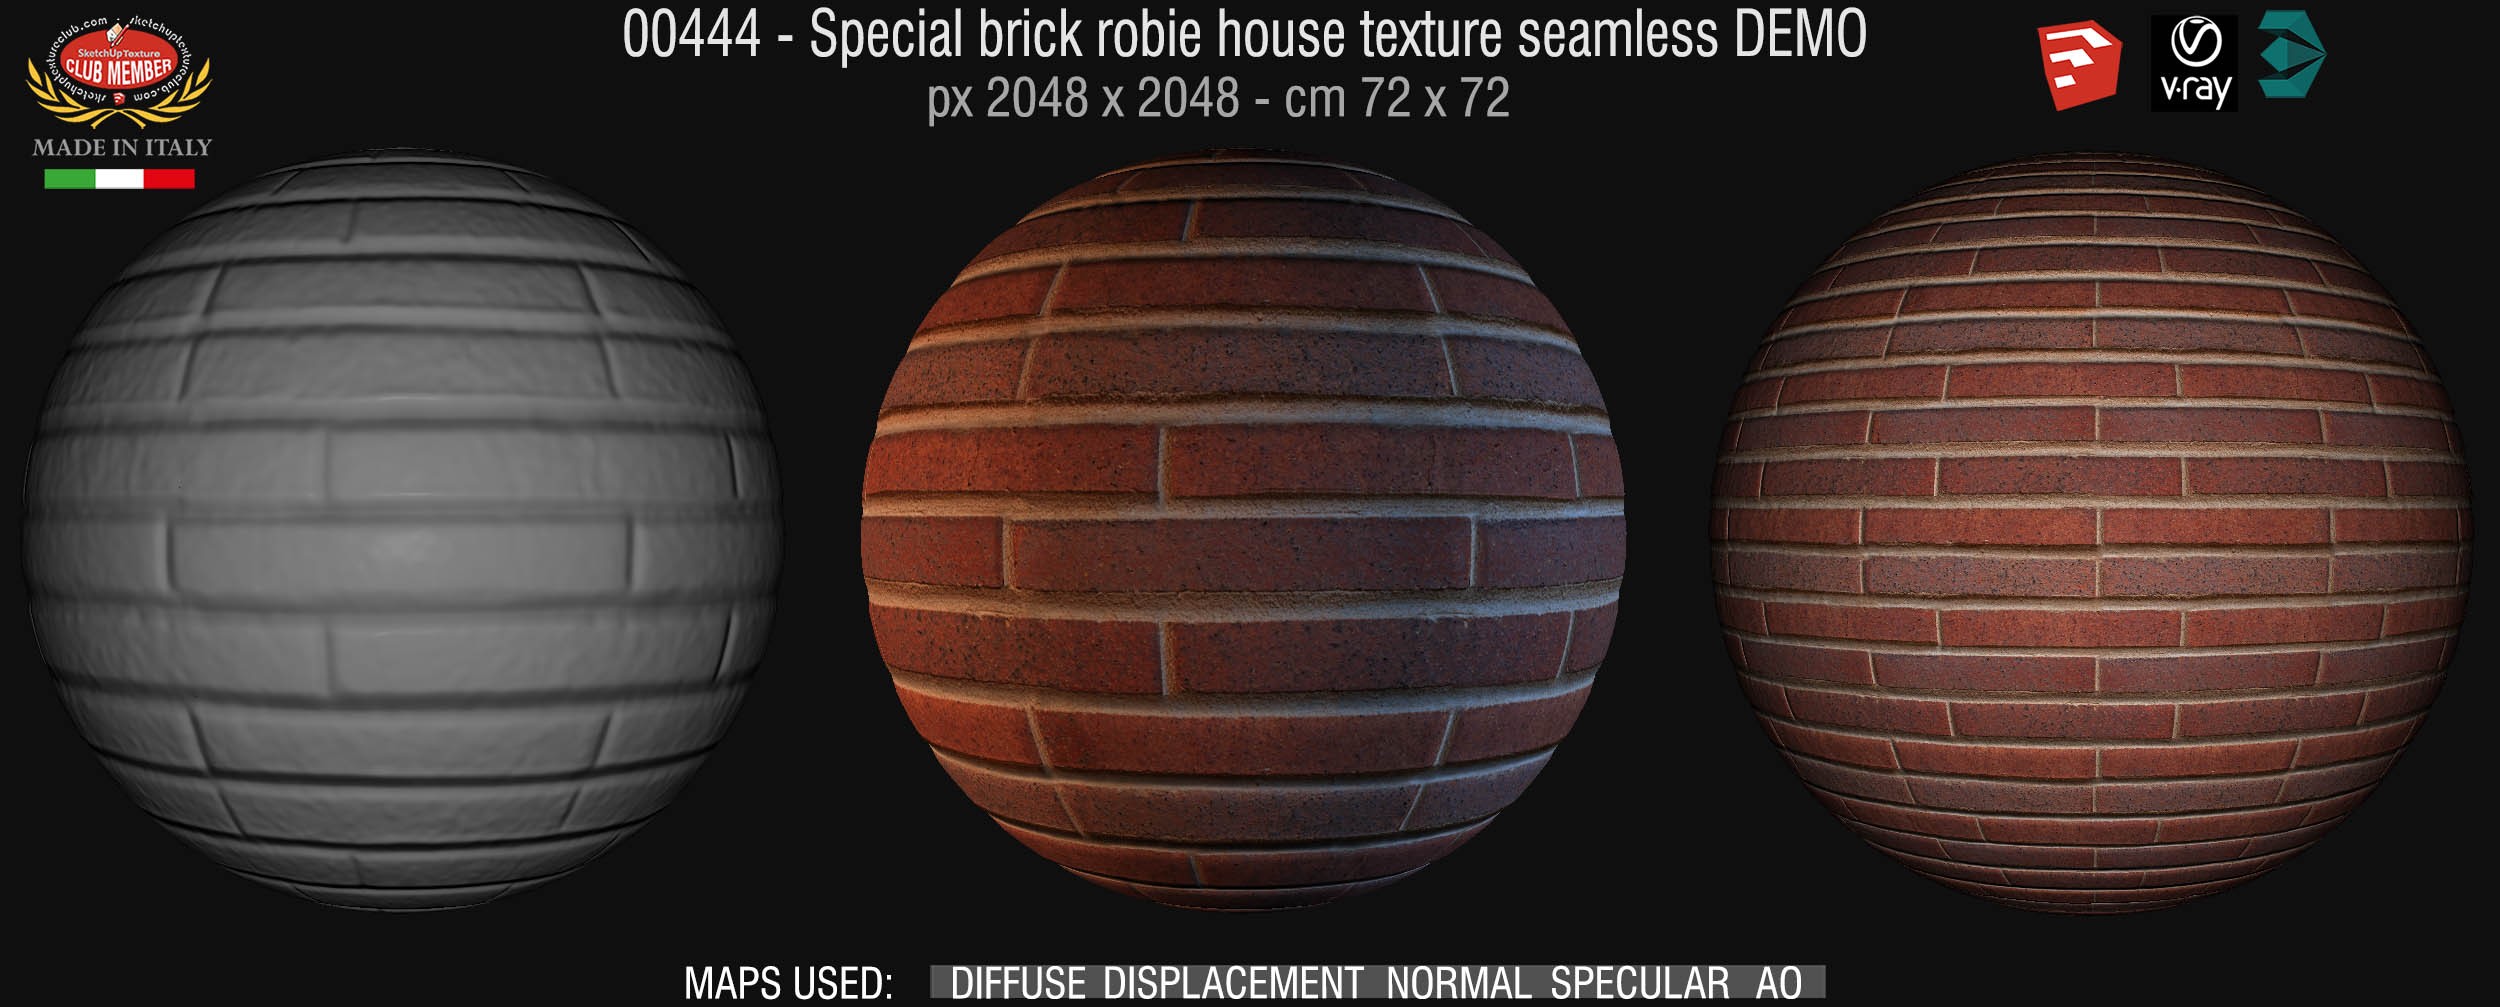 00444 Special brick robie house texture seamless + maps DEMO